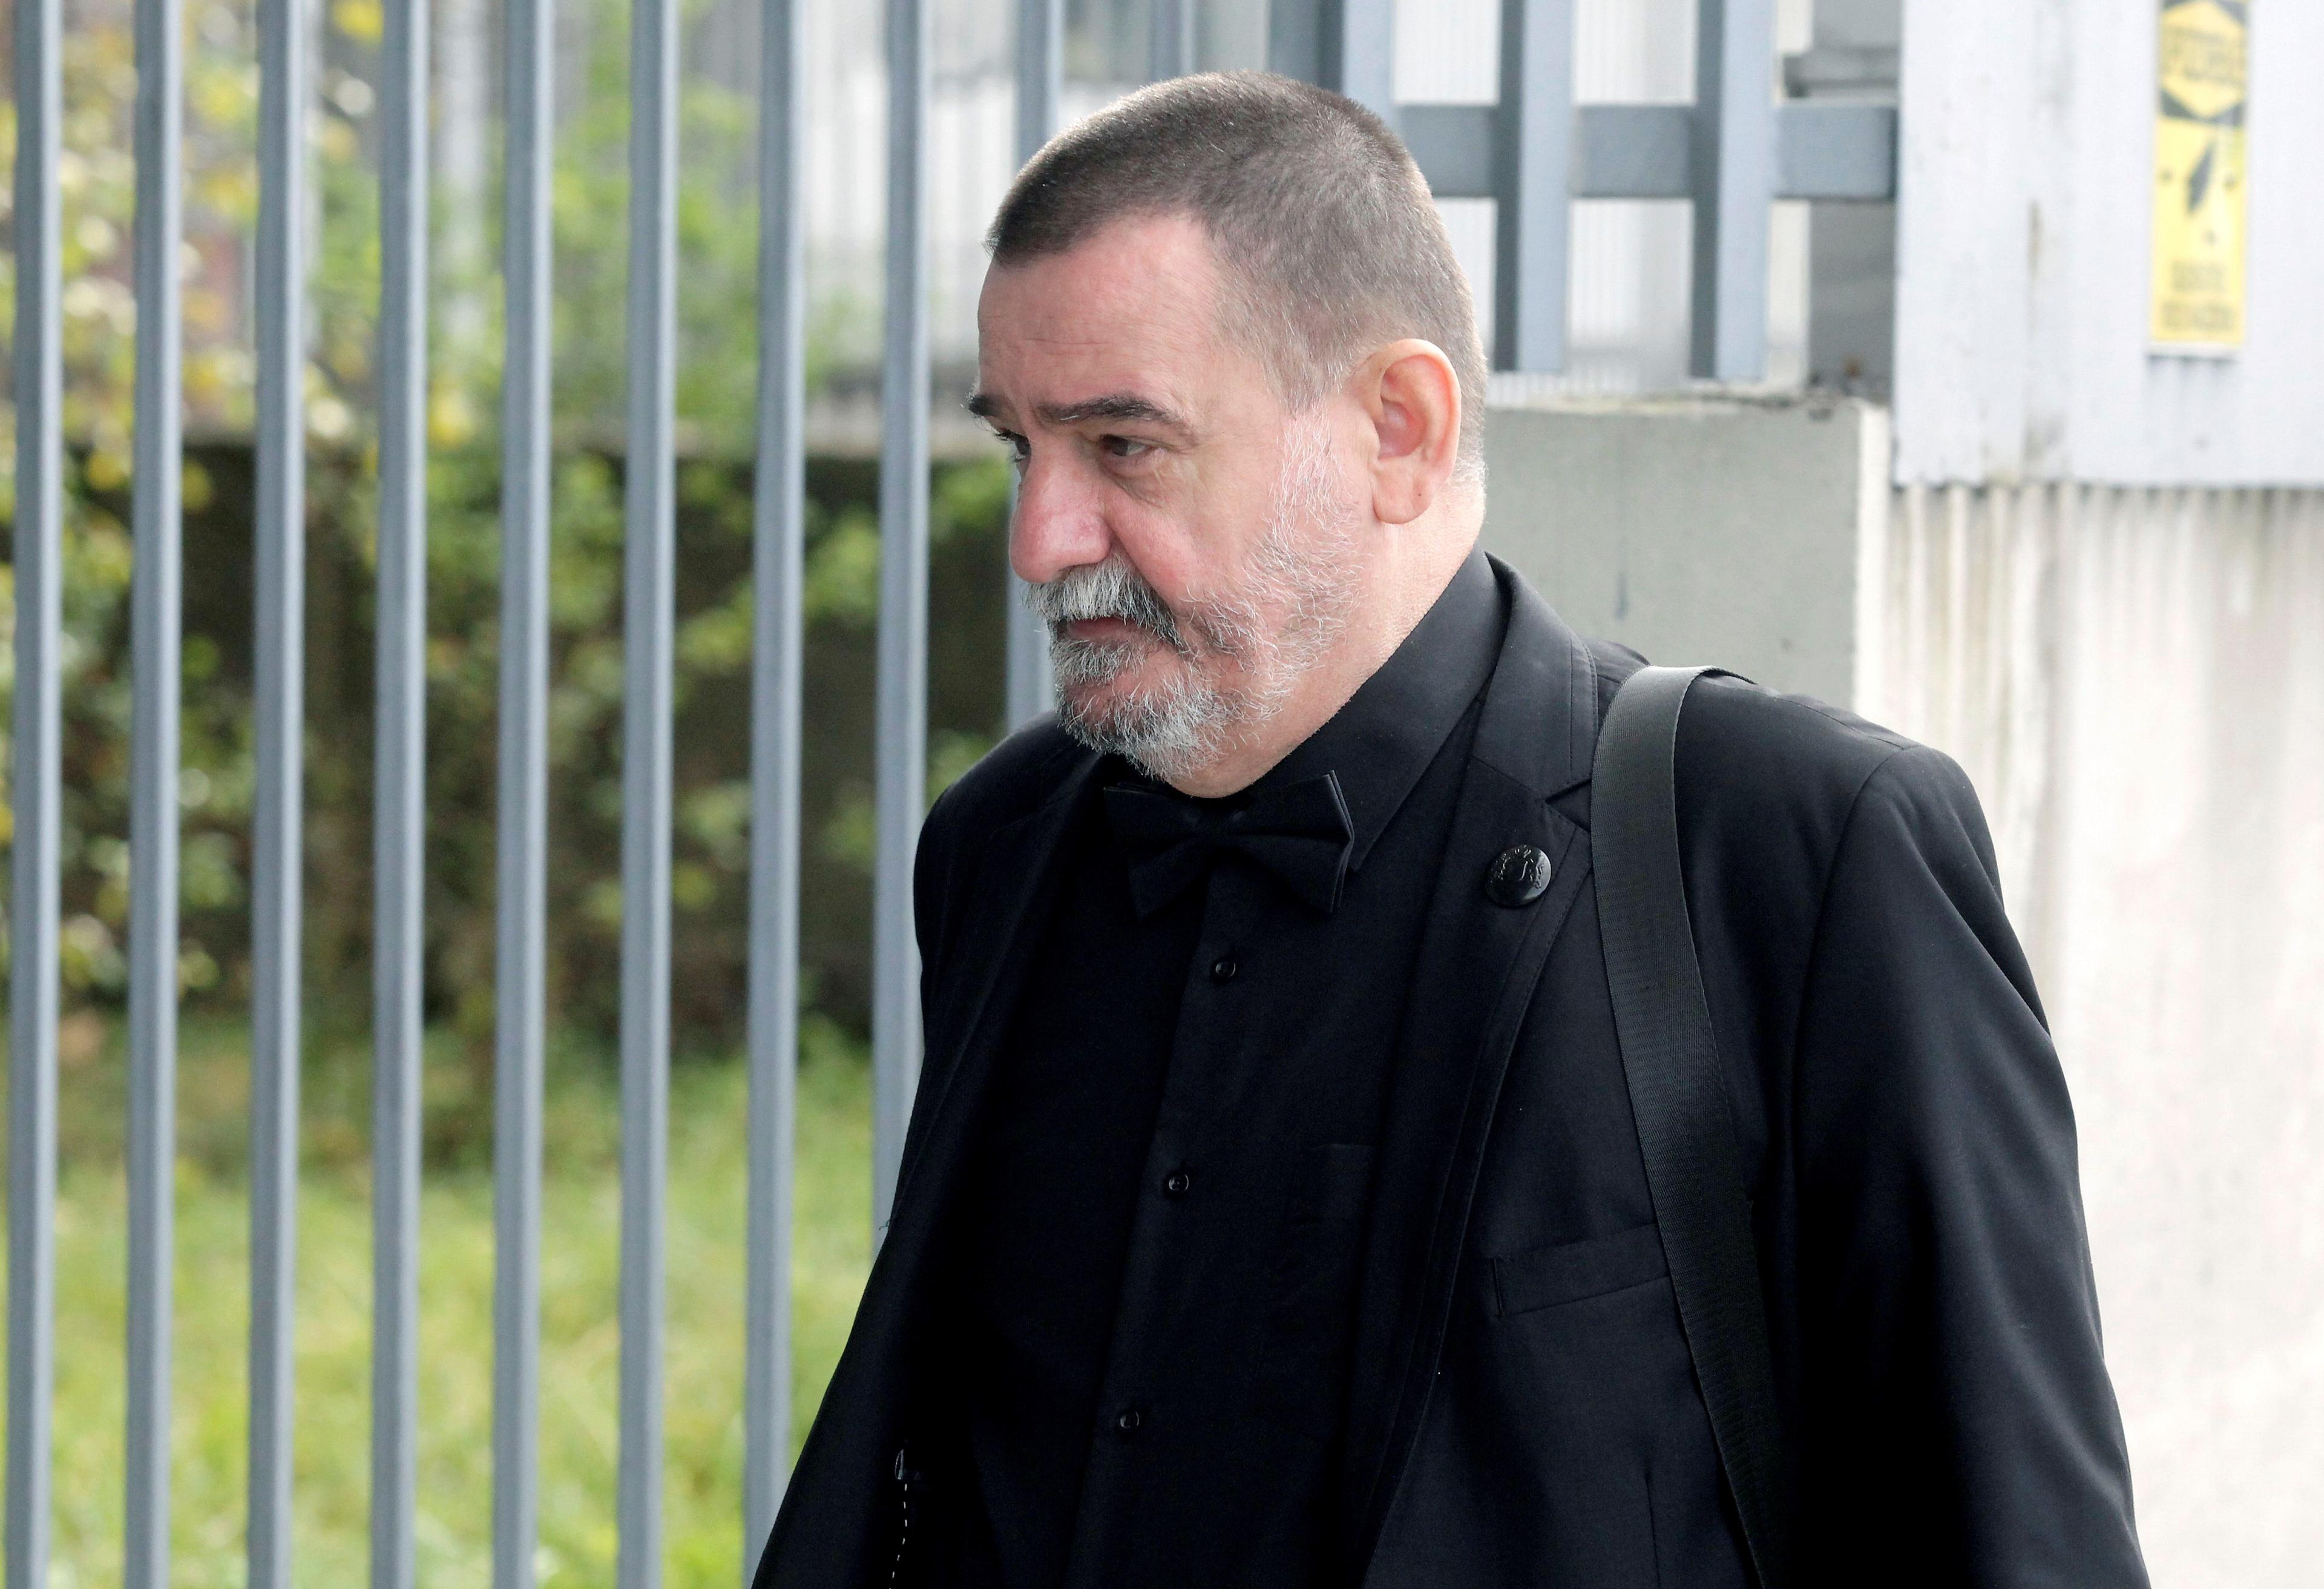 Ako tužilac Mihajlović ne opravda izostanak sa suđenja, bit će mu određen pritvor